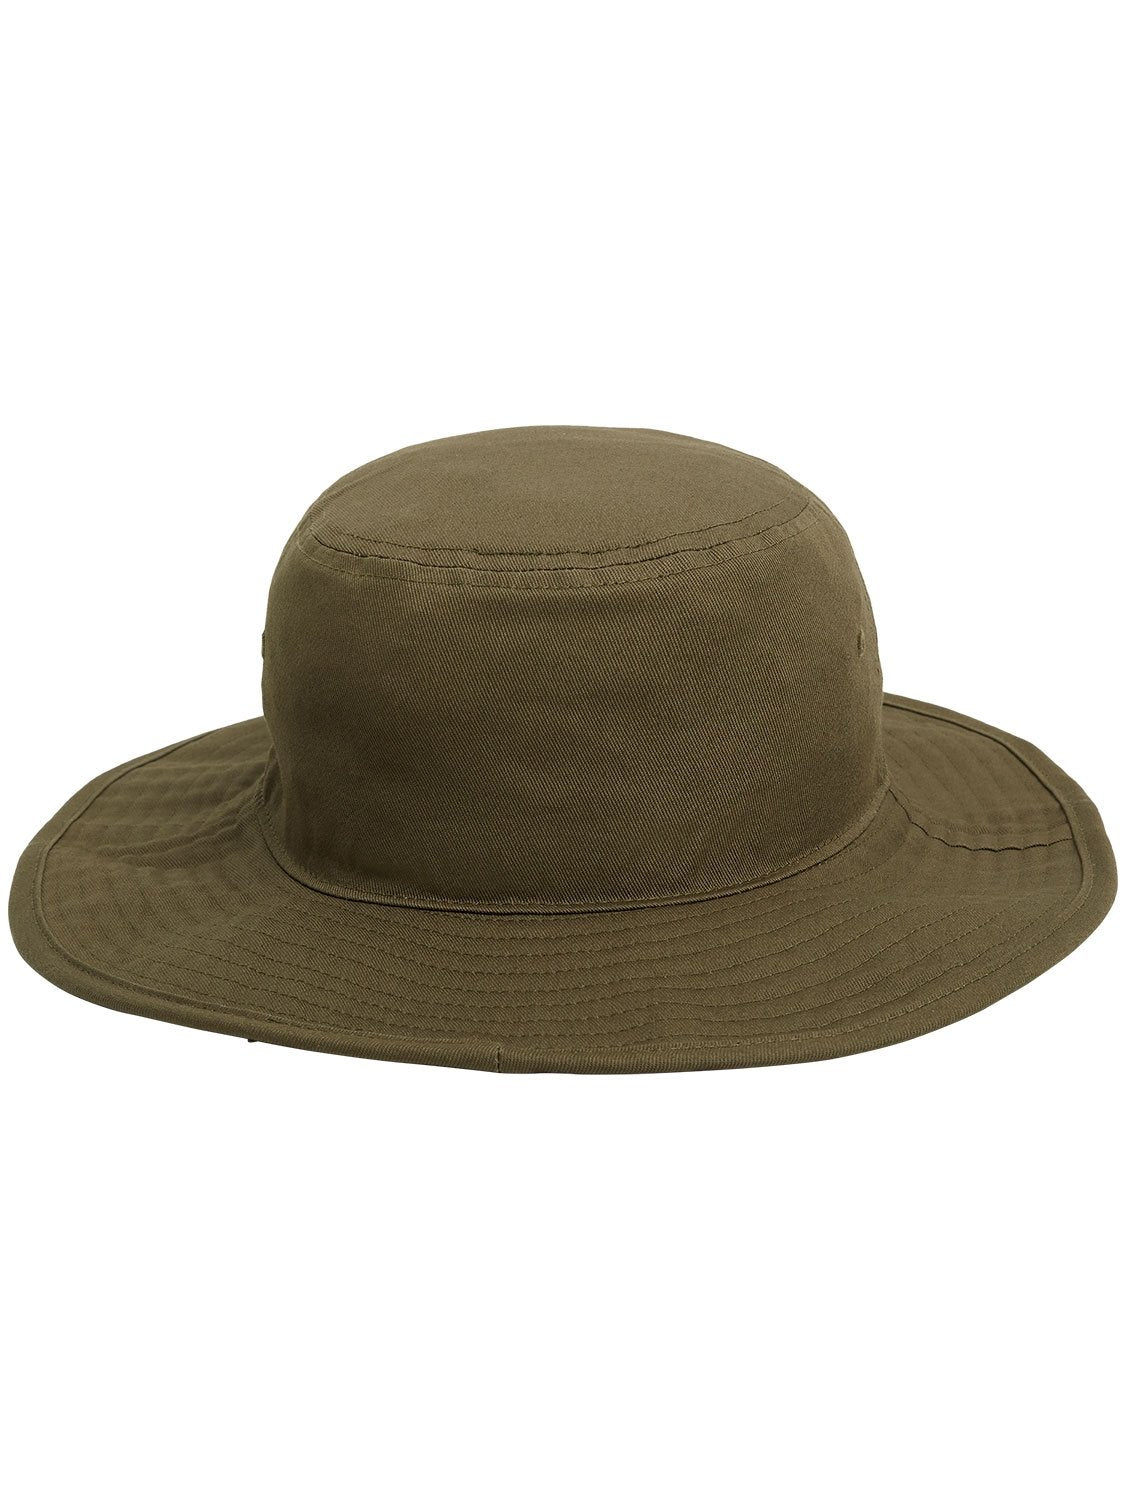 Billabong Men's Big John Hat